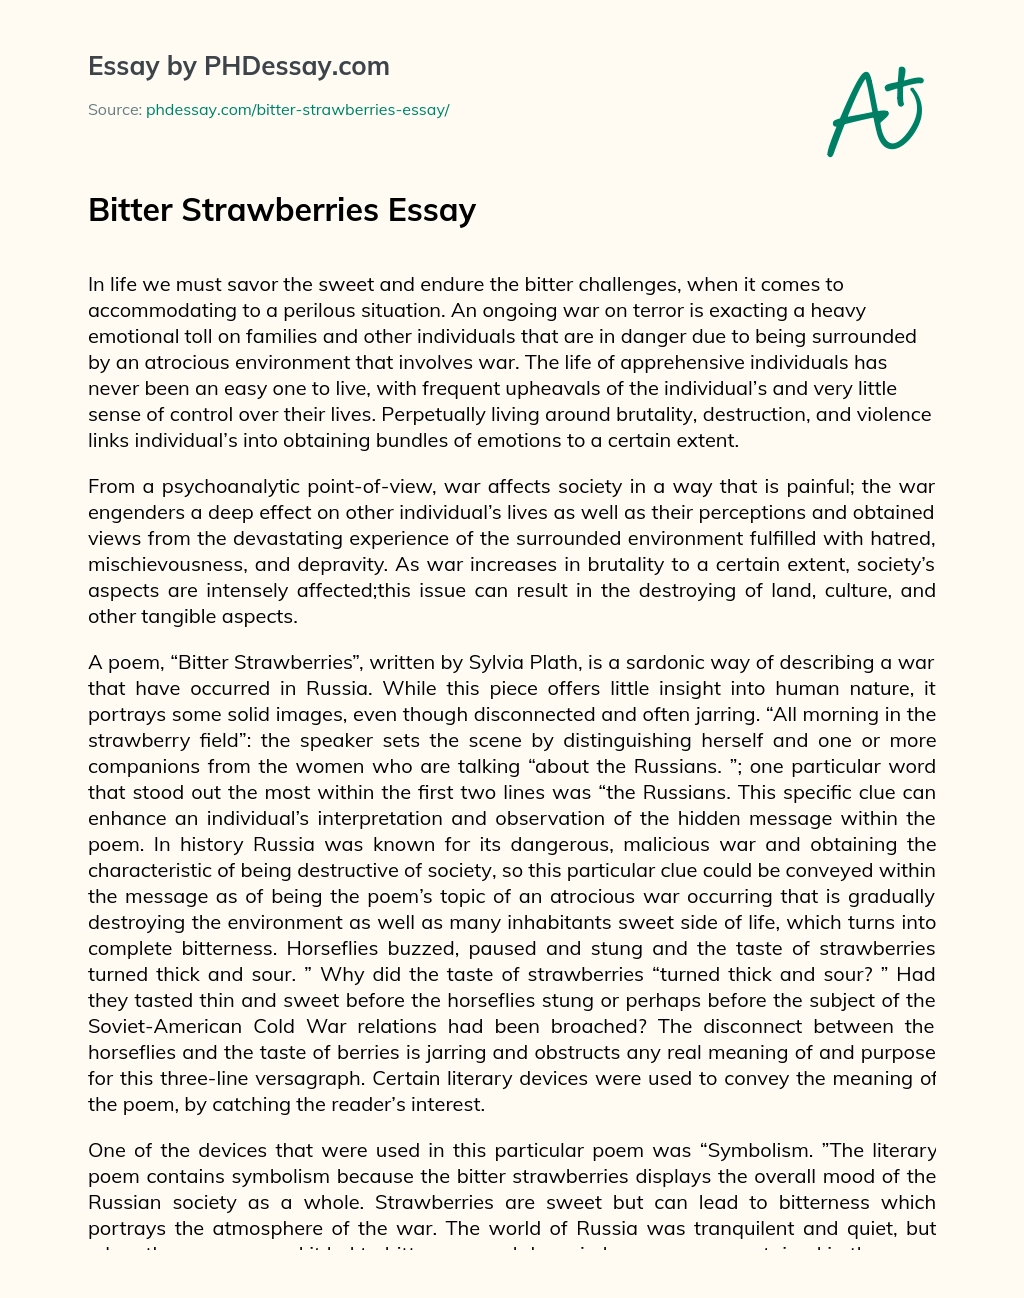 Bitter Strawberries Essay essay